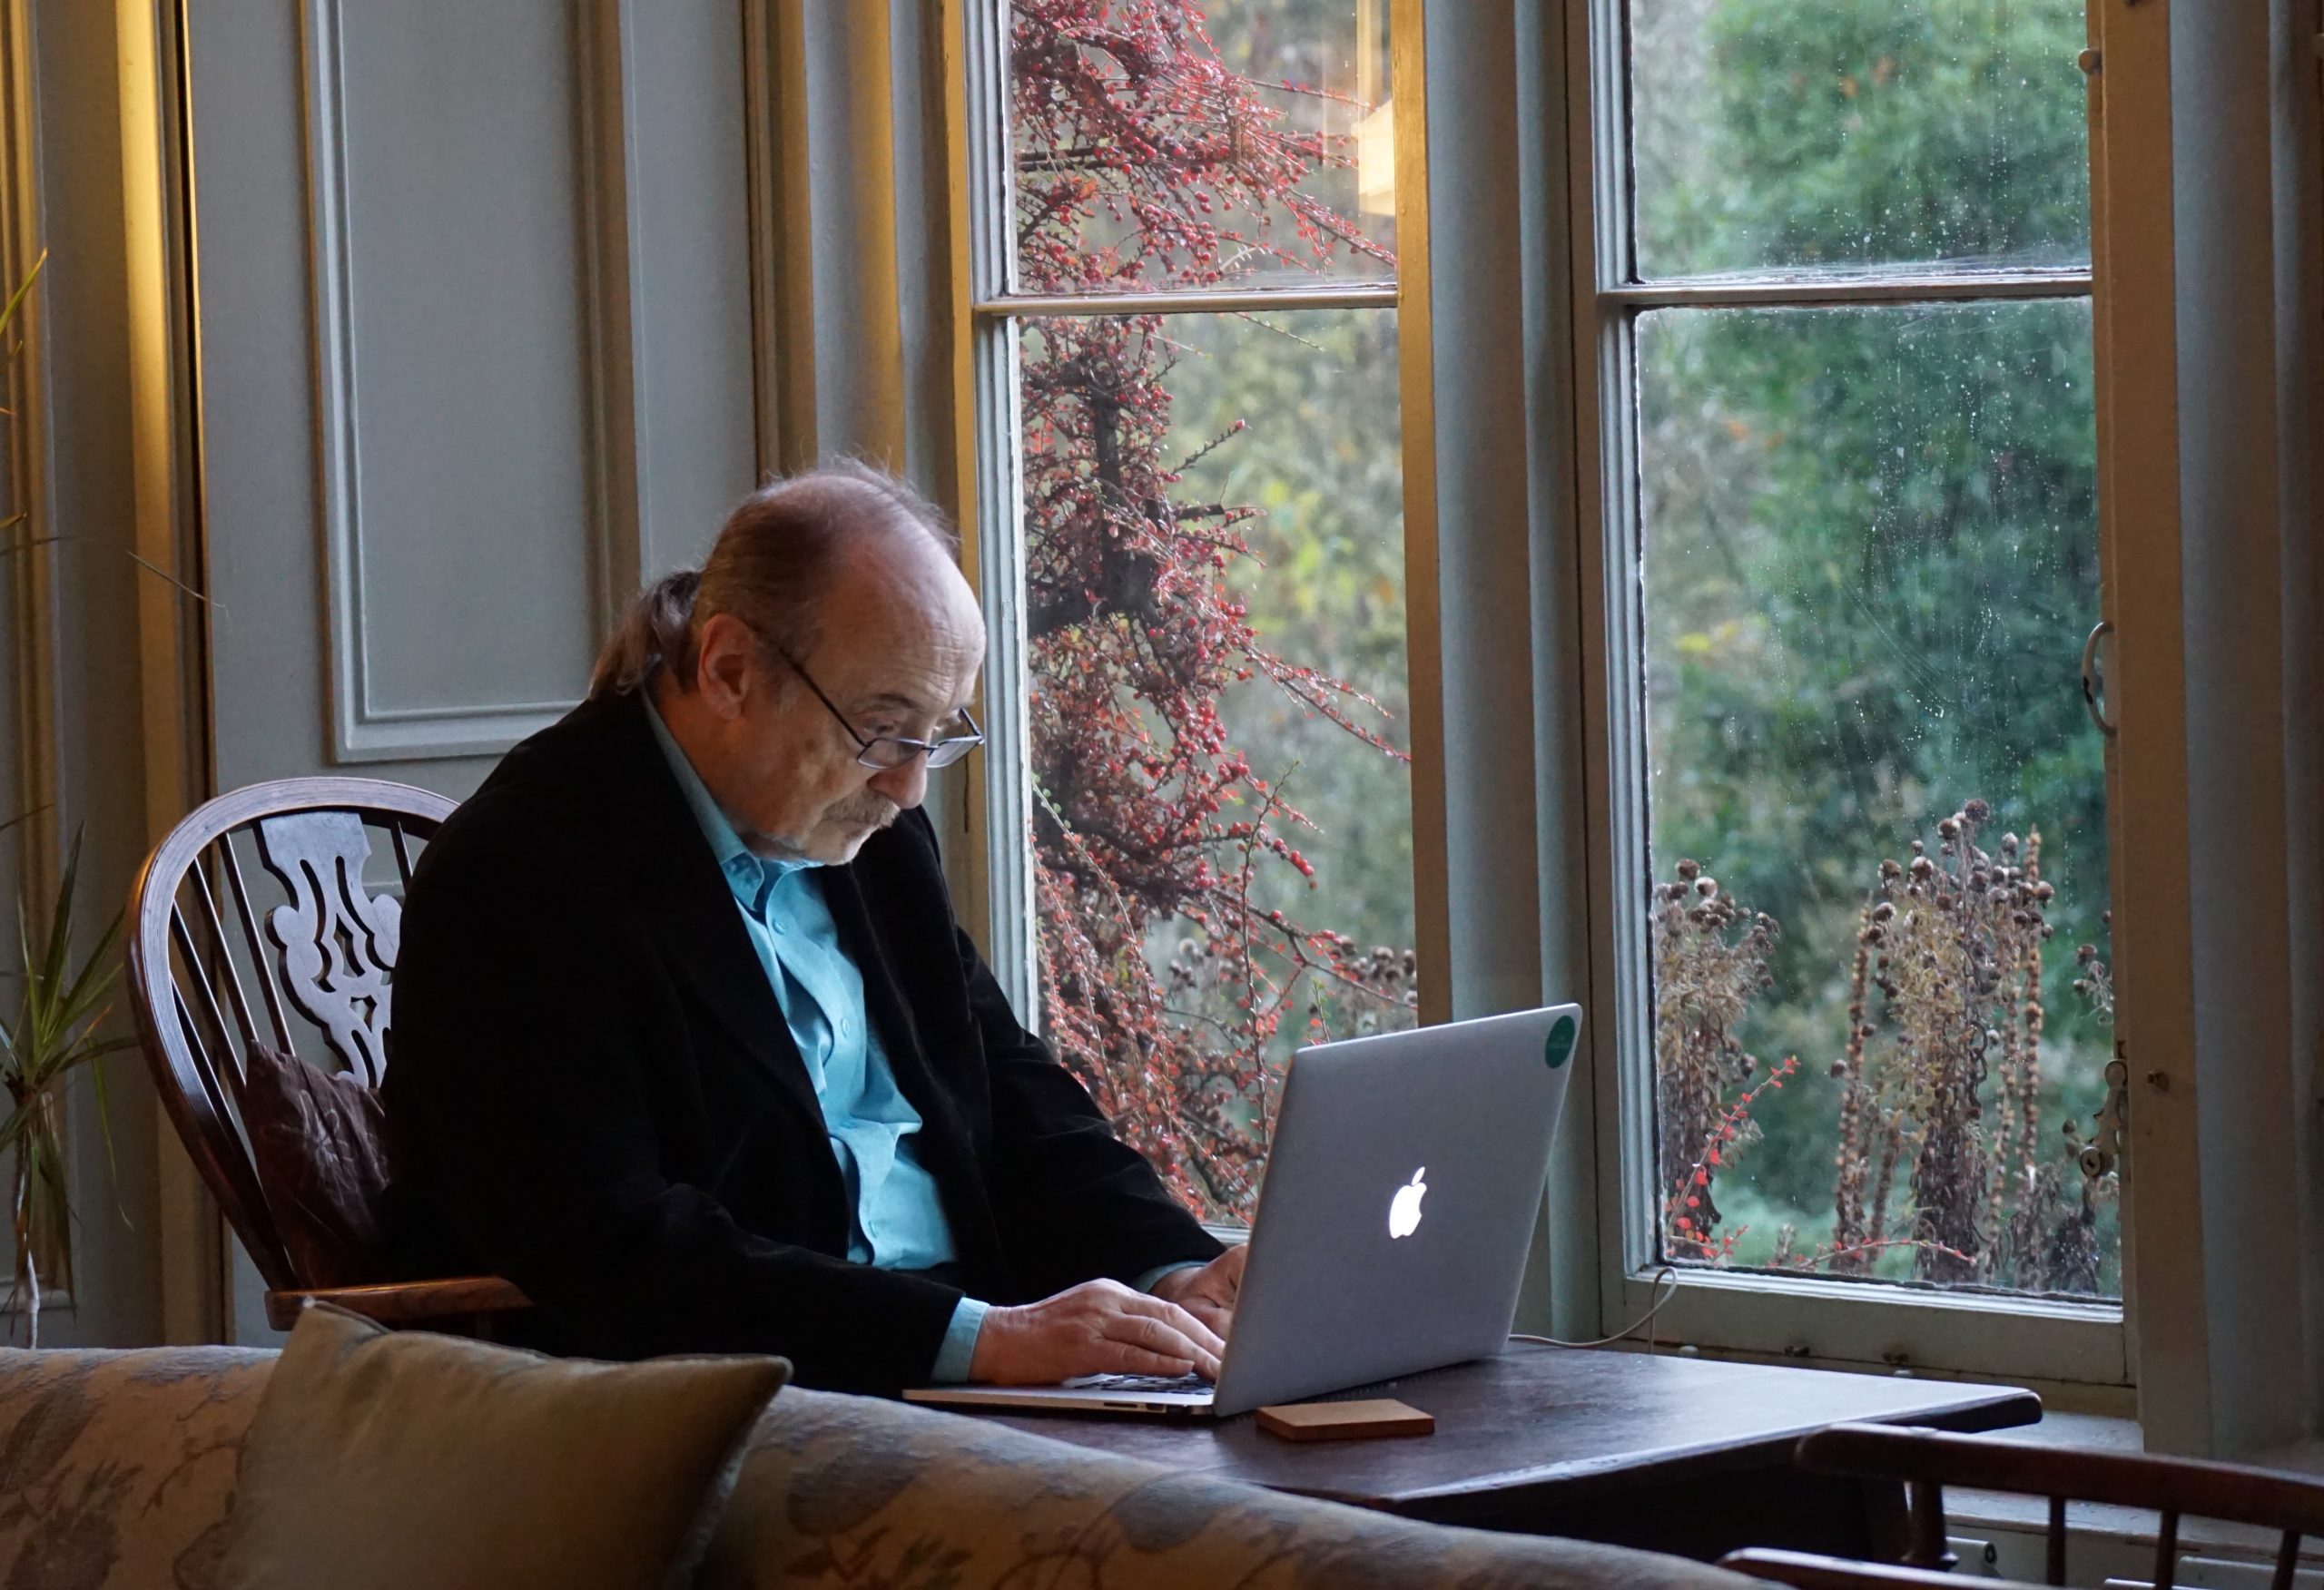 Older man using a laptop